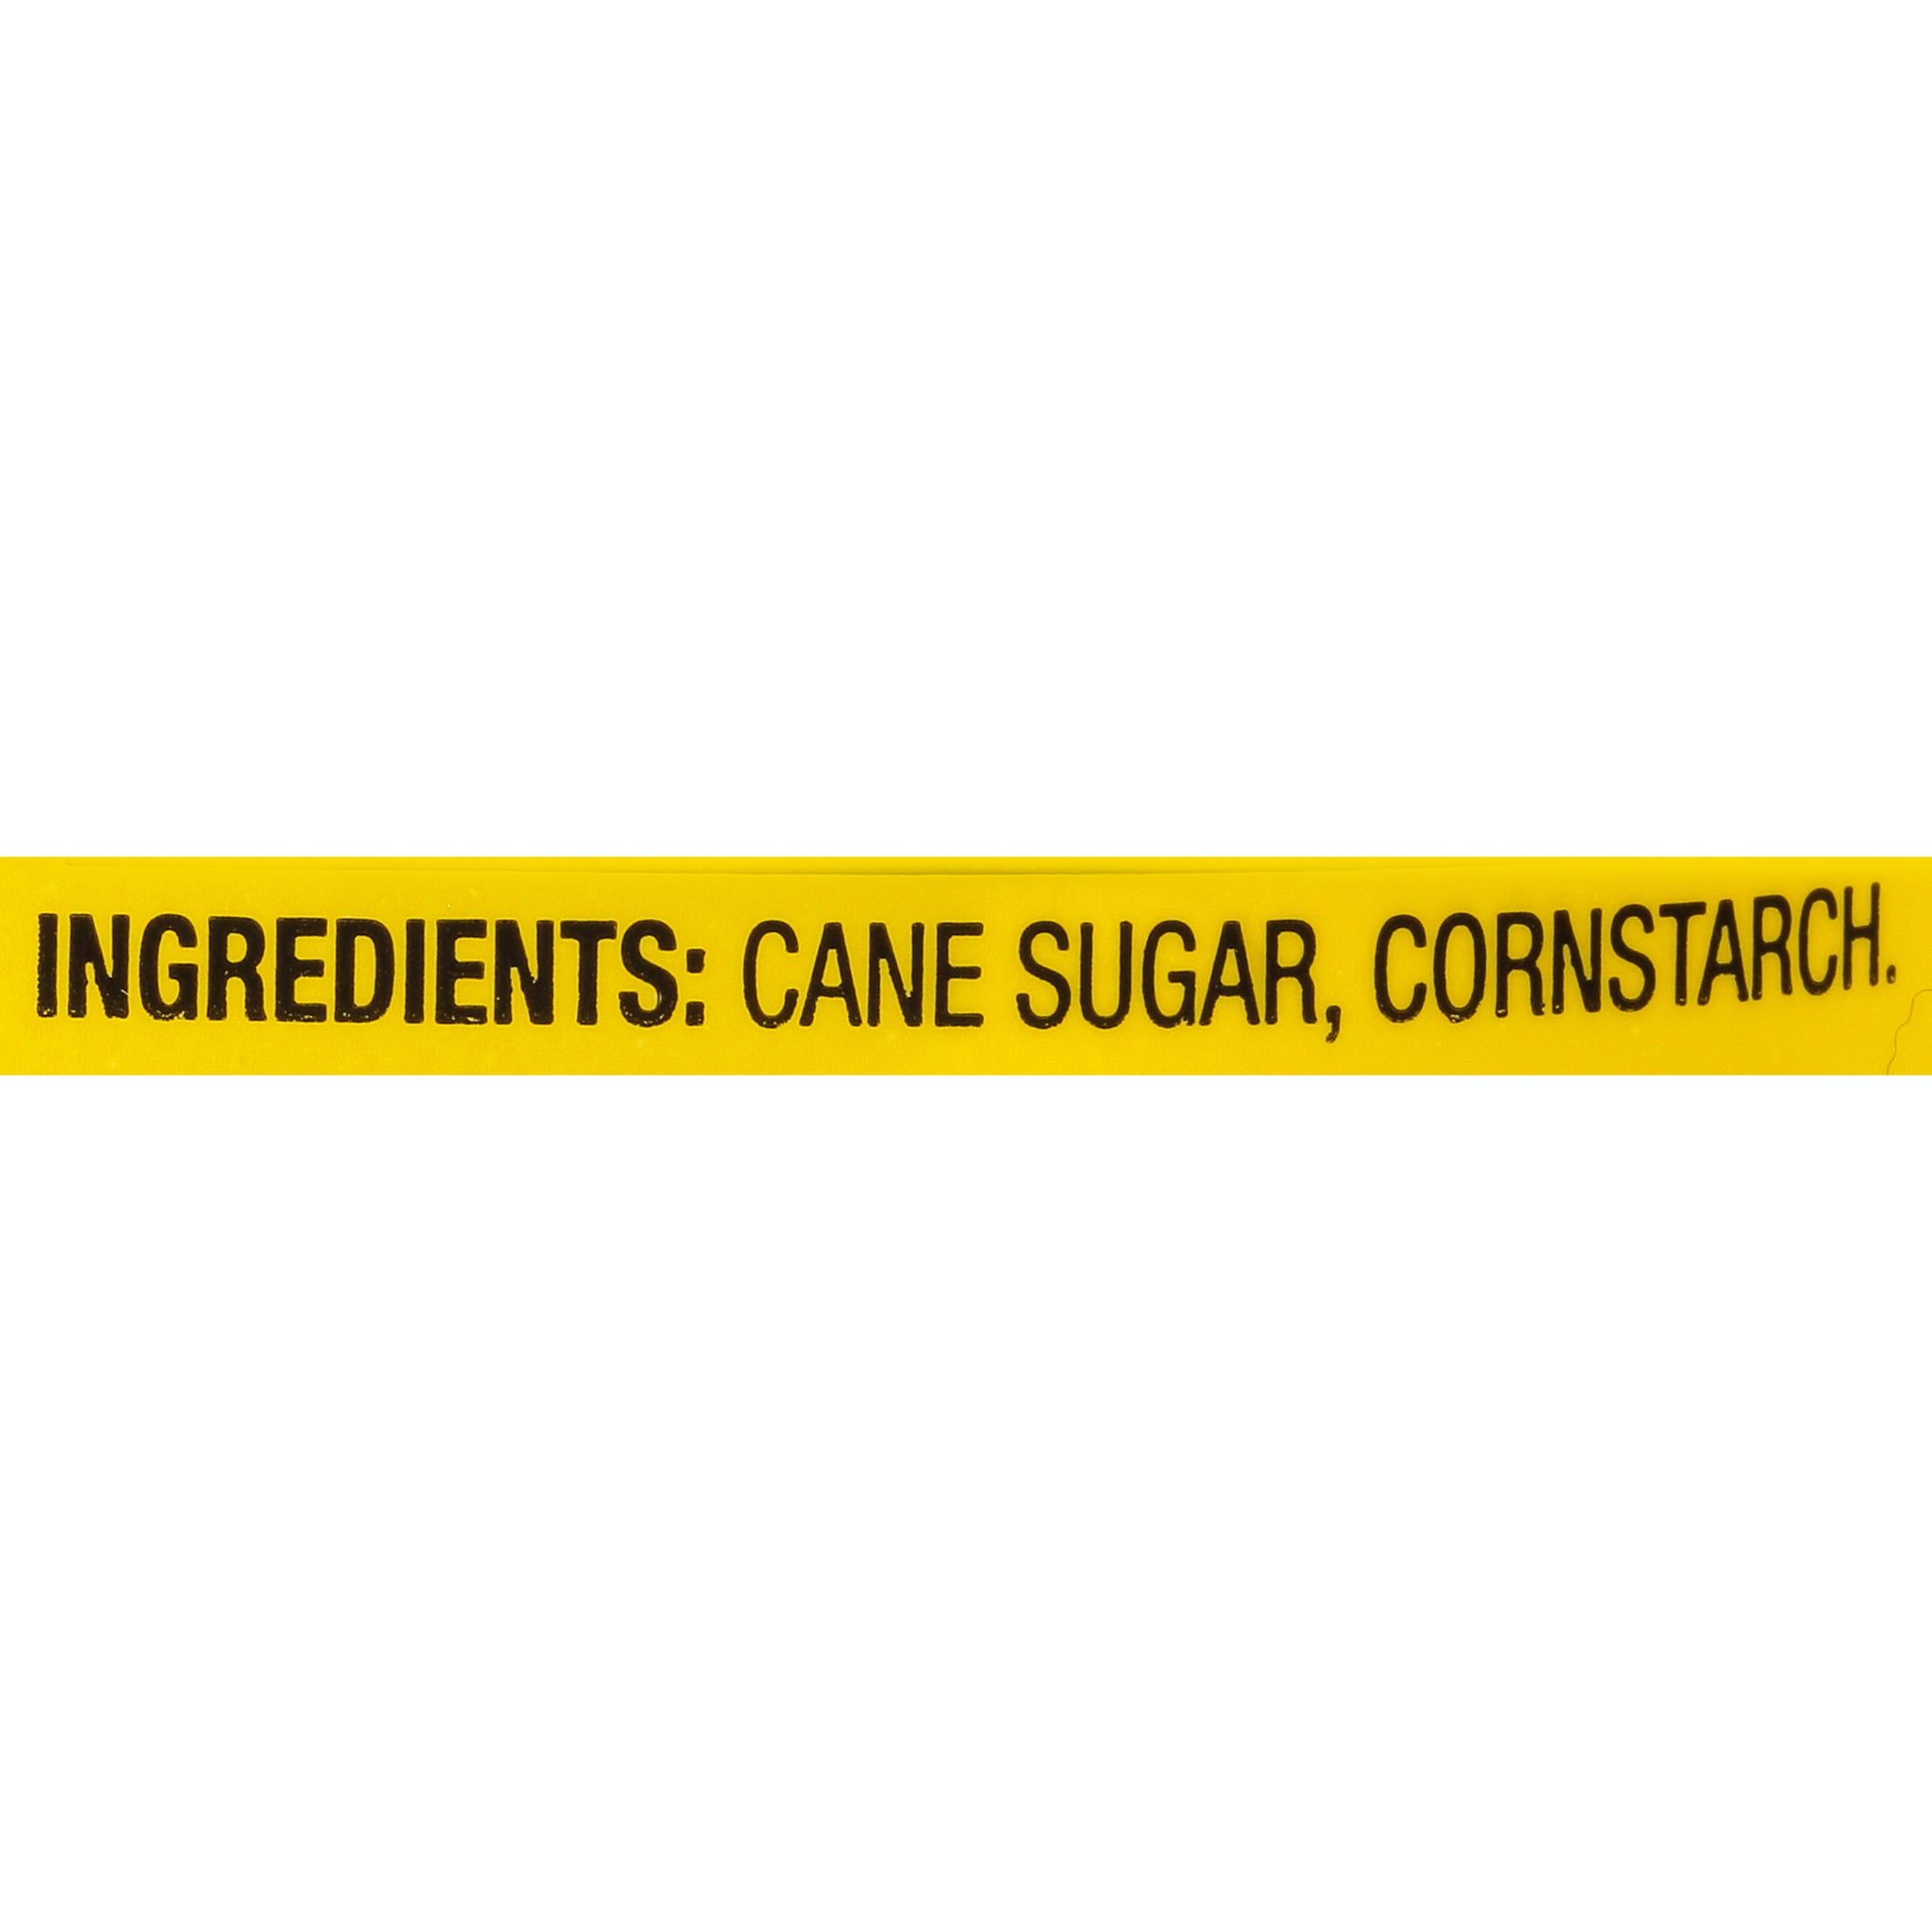 Pure Cane Sugar with Cornstarch